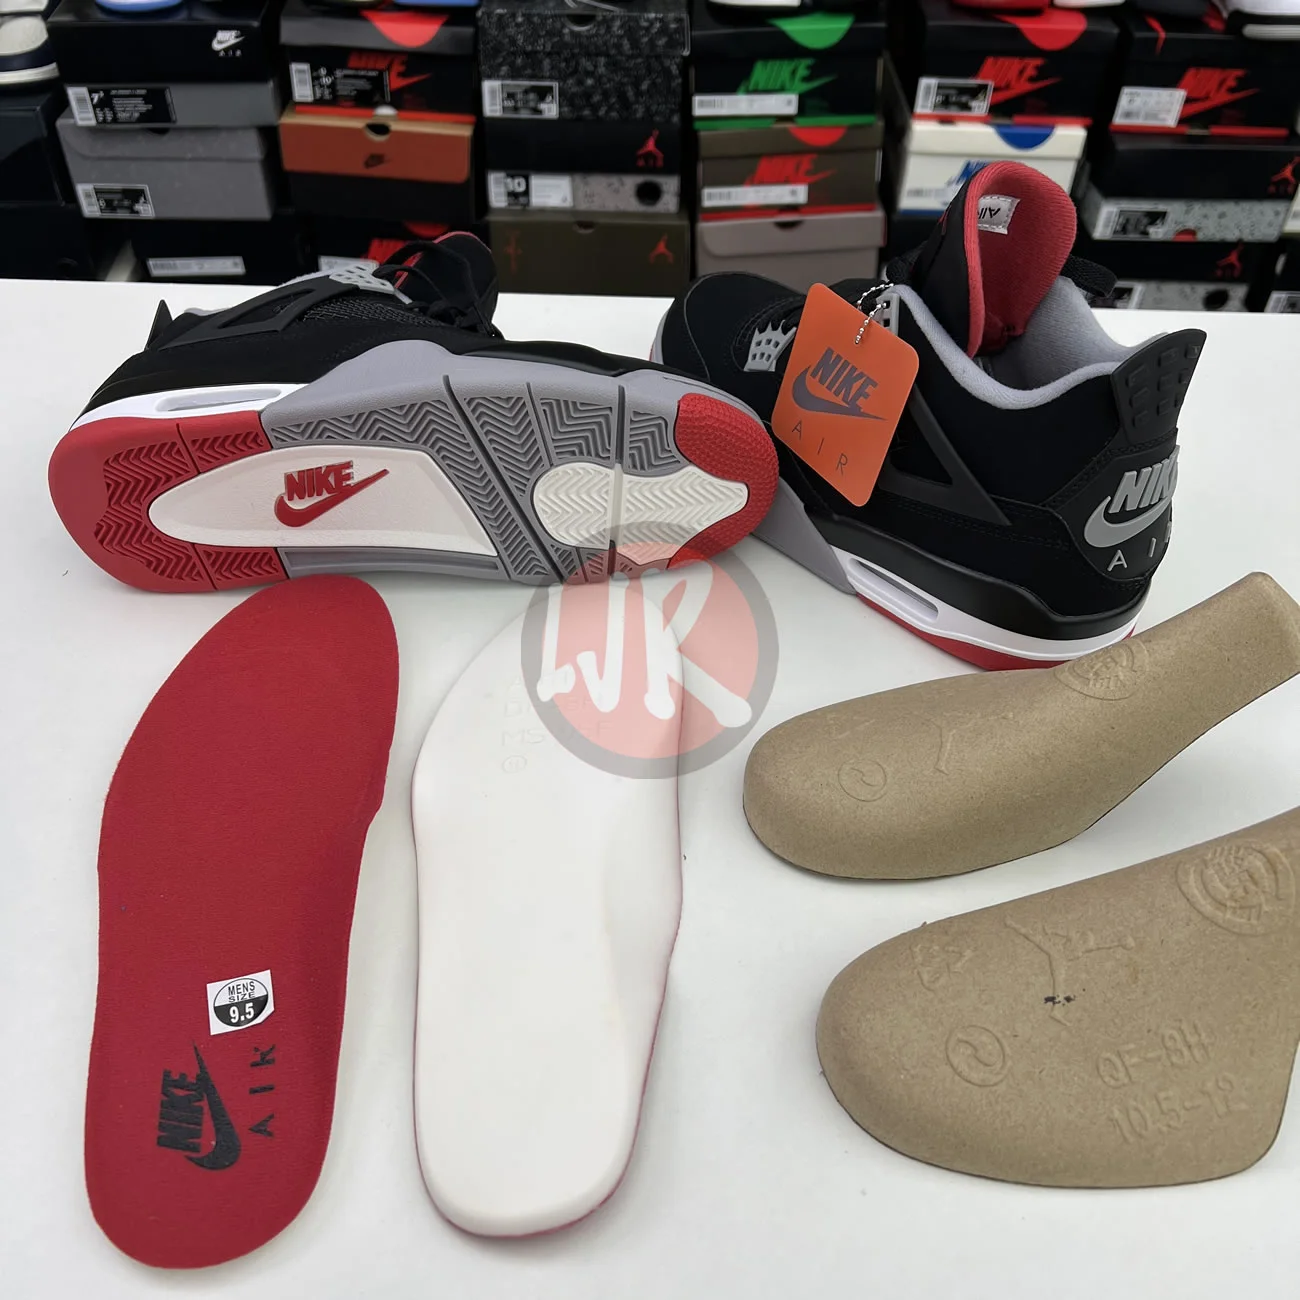 Air Jordan 4 Retro Bred 2019 308497 060 Ljr Sneakers (5) - bc-ljr.net